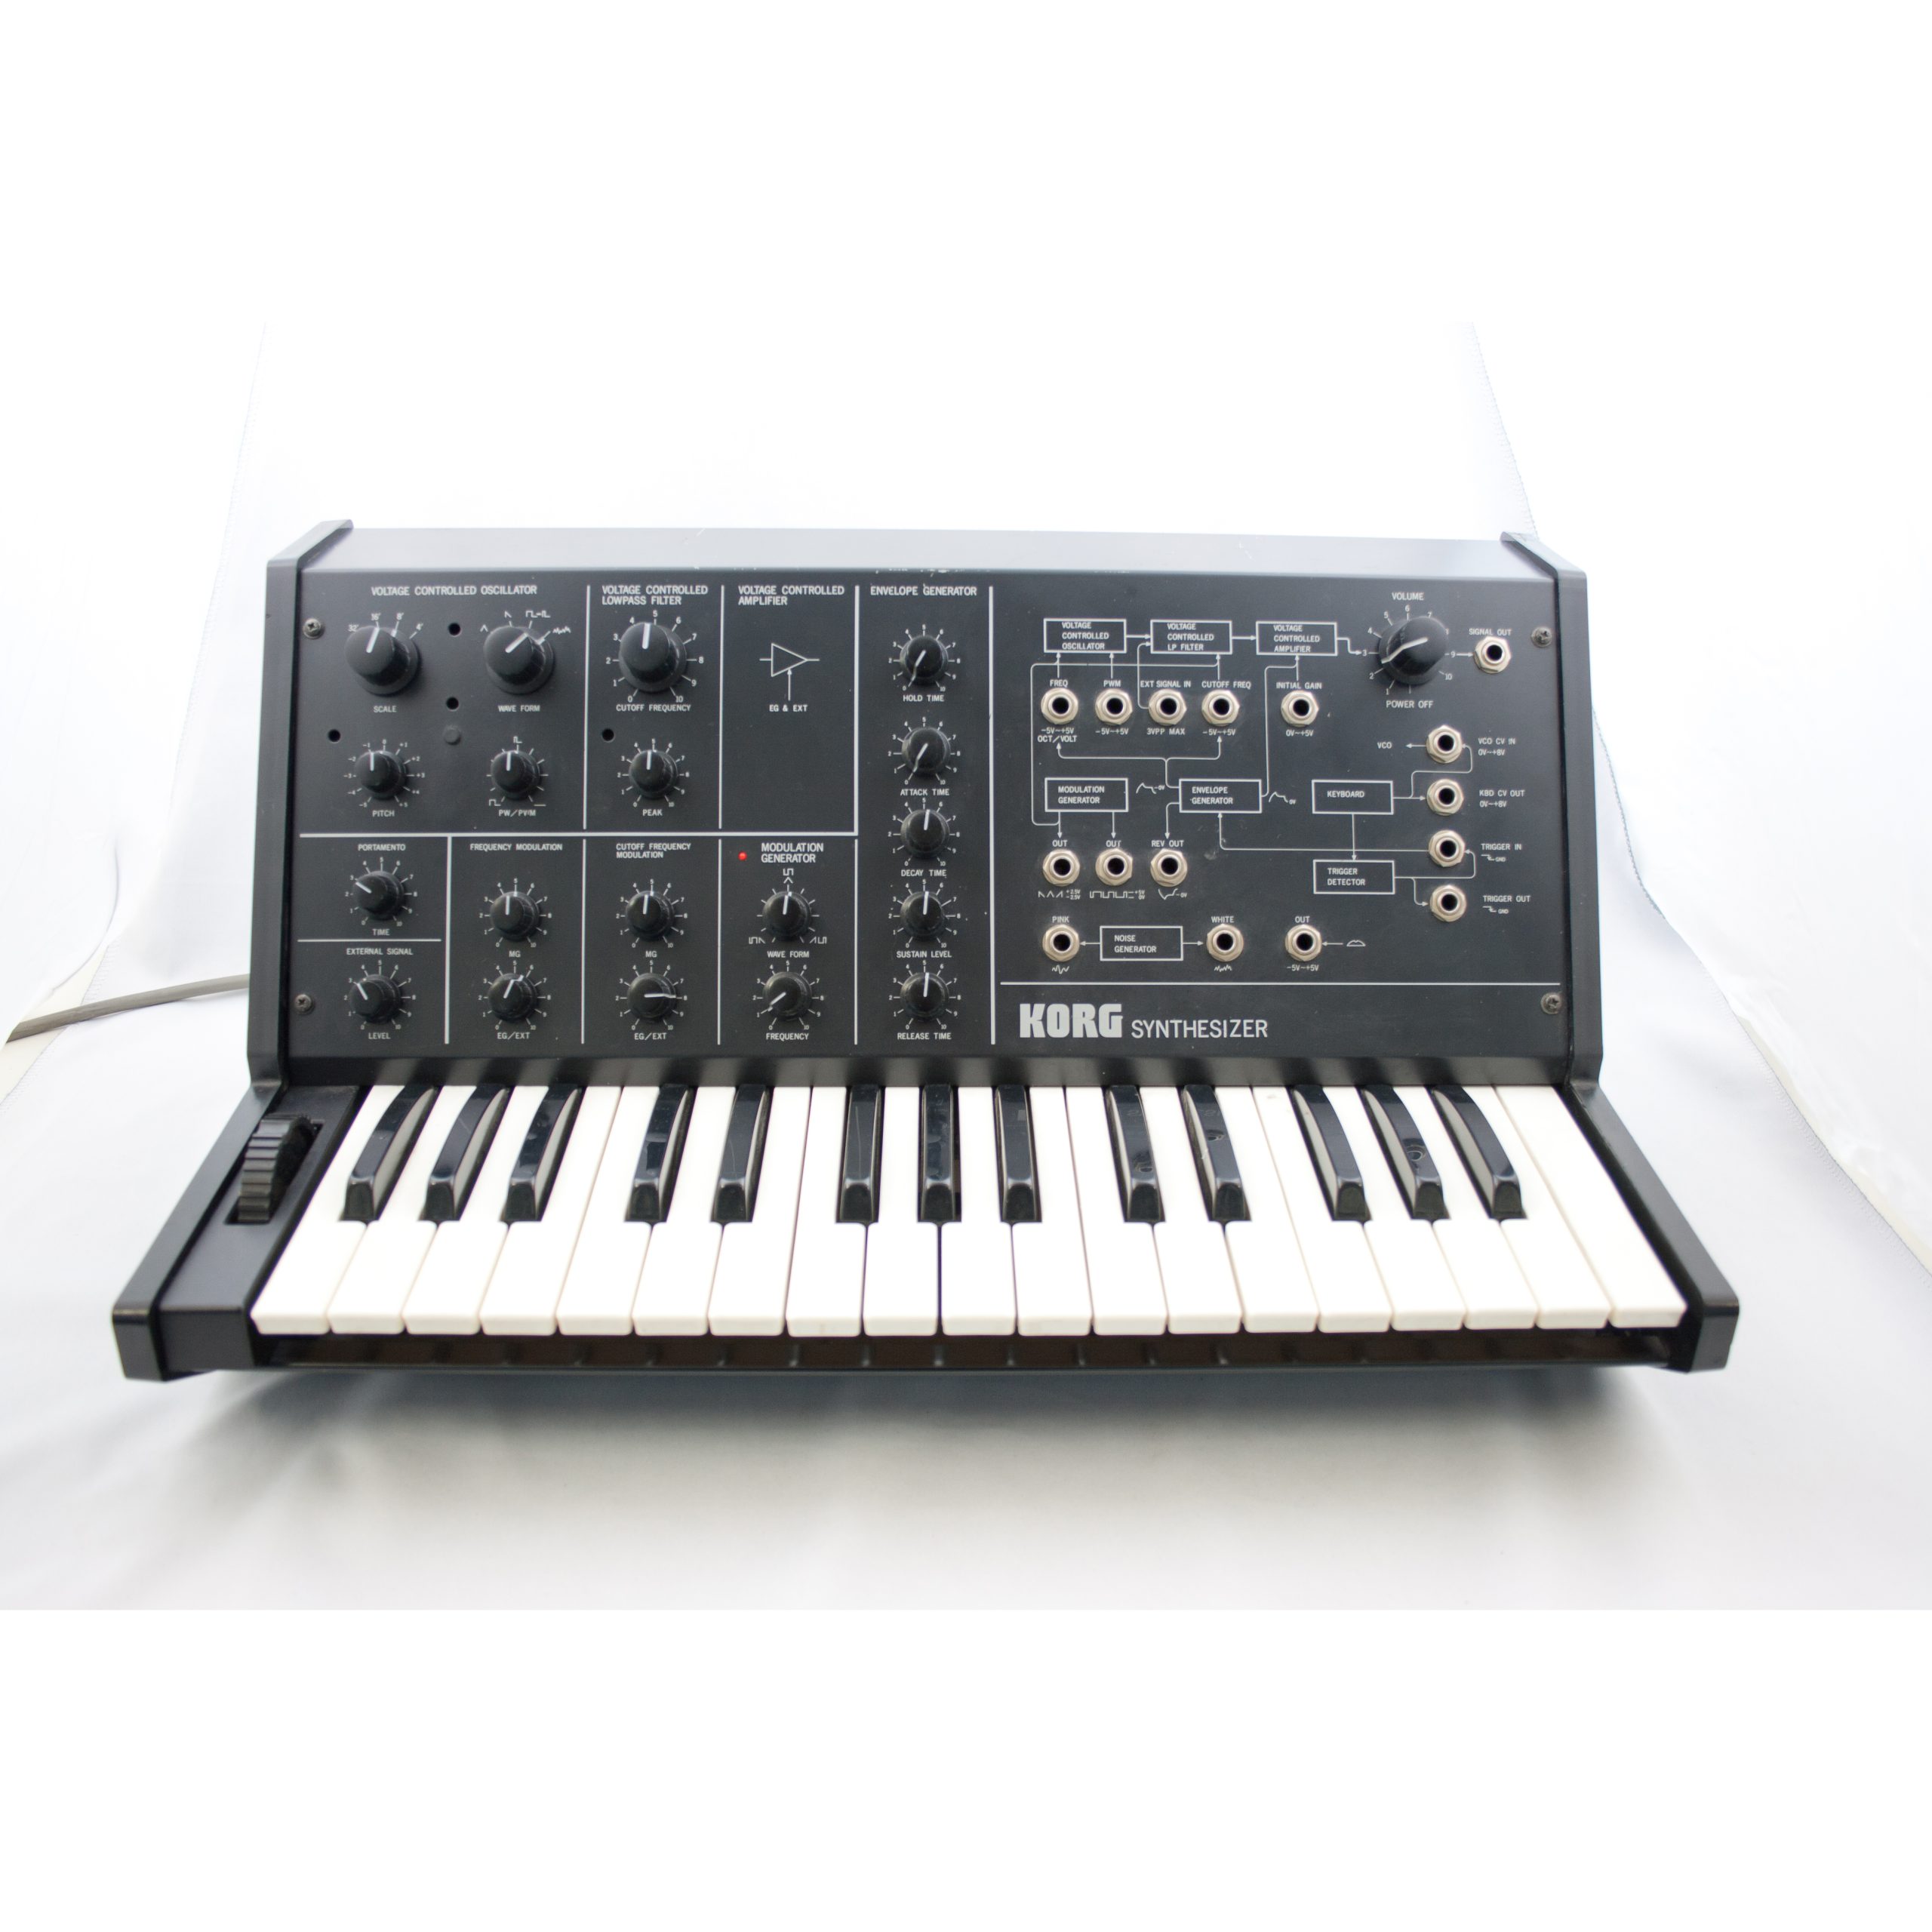 Korg MS-10 analog synthesizer